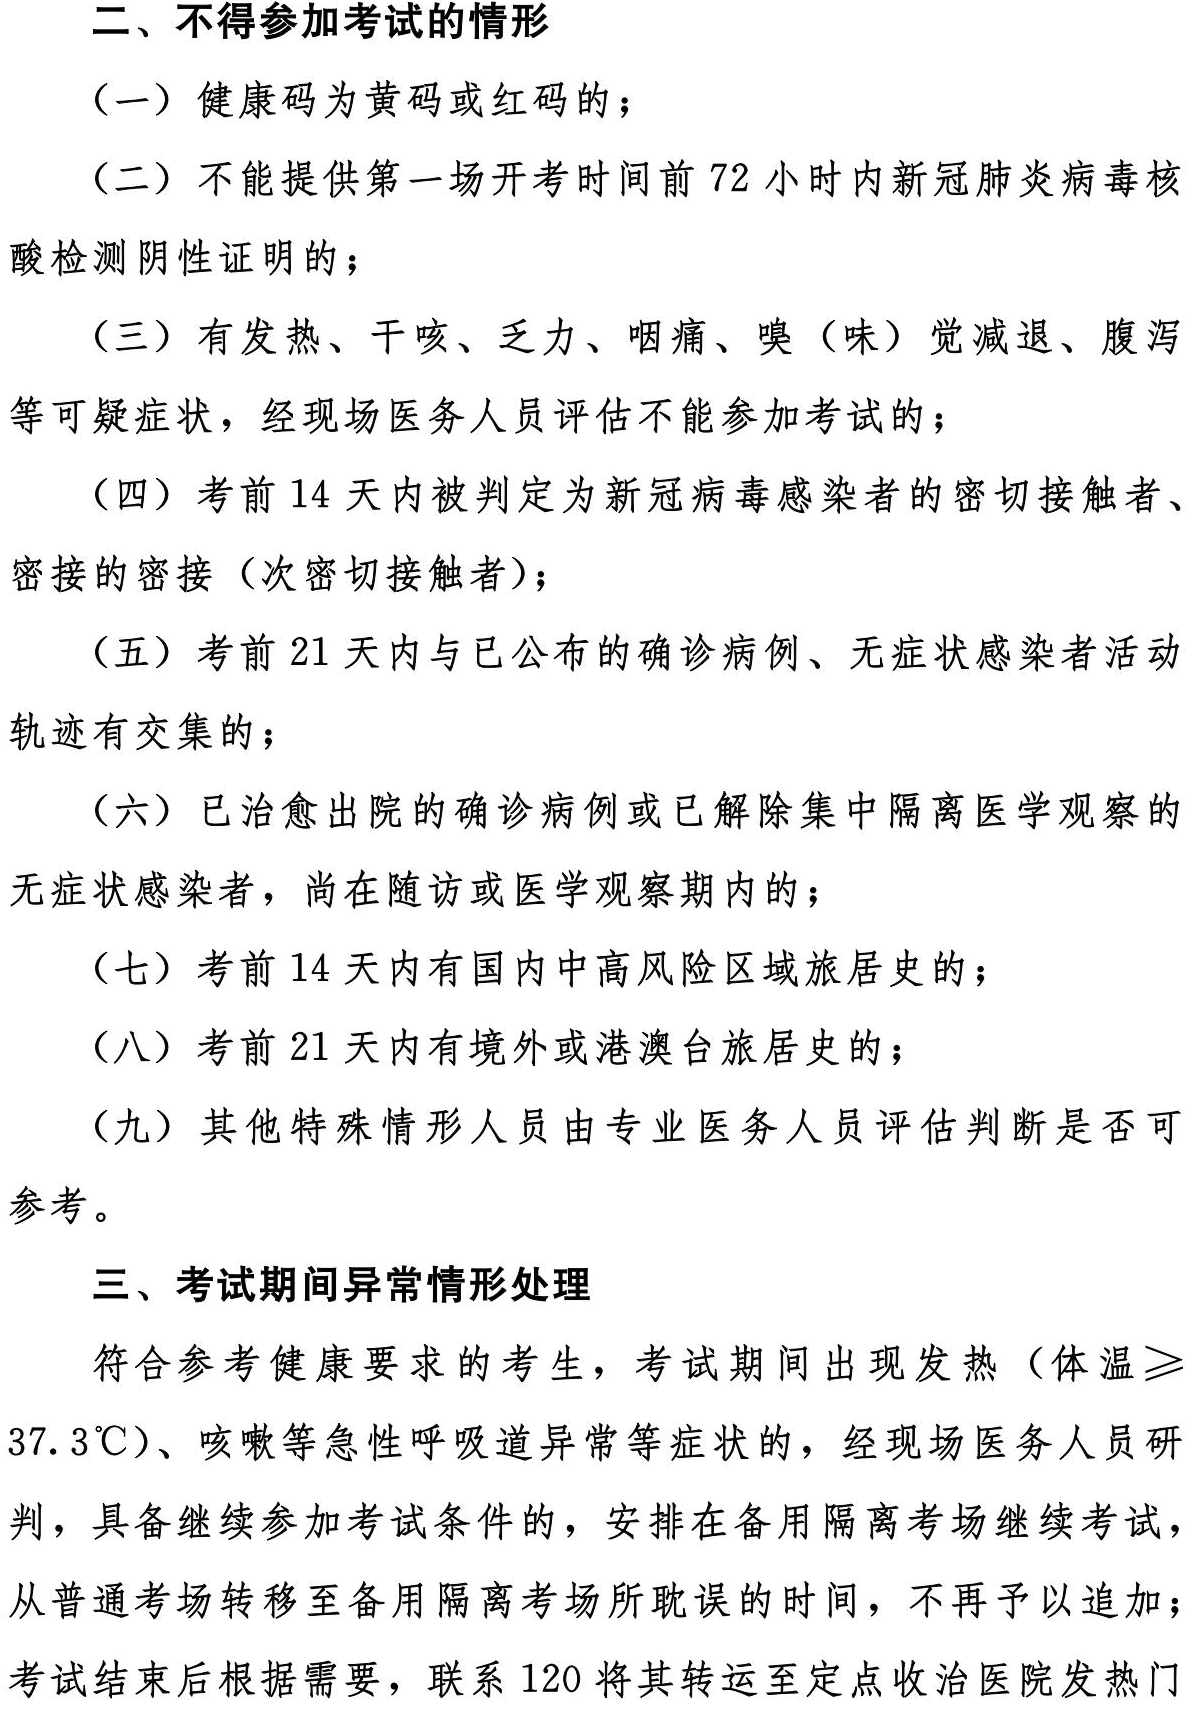 河南省2021中级经济师疫情防控通知